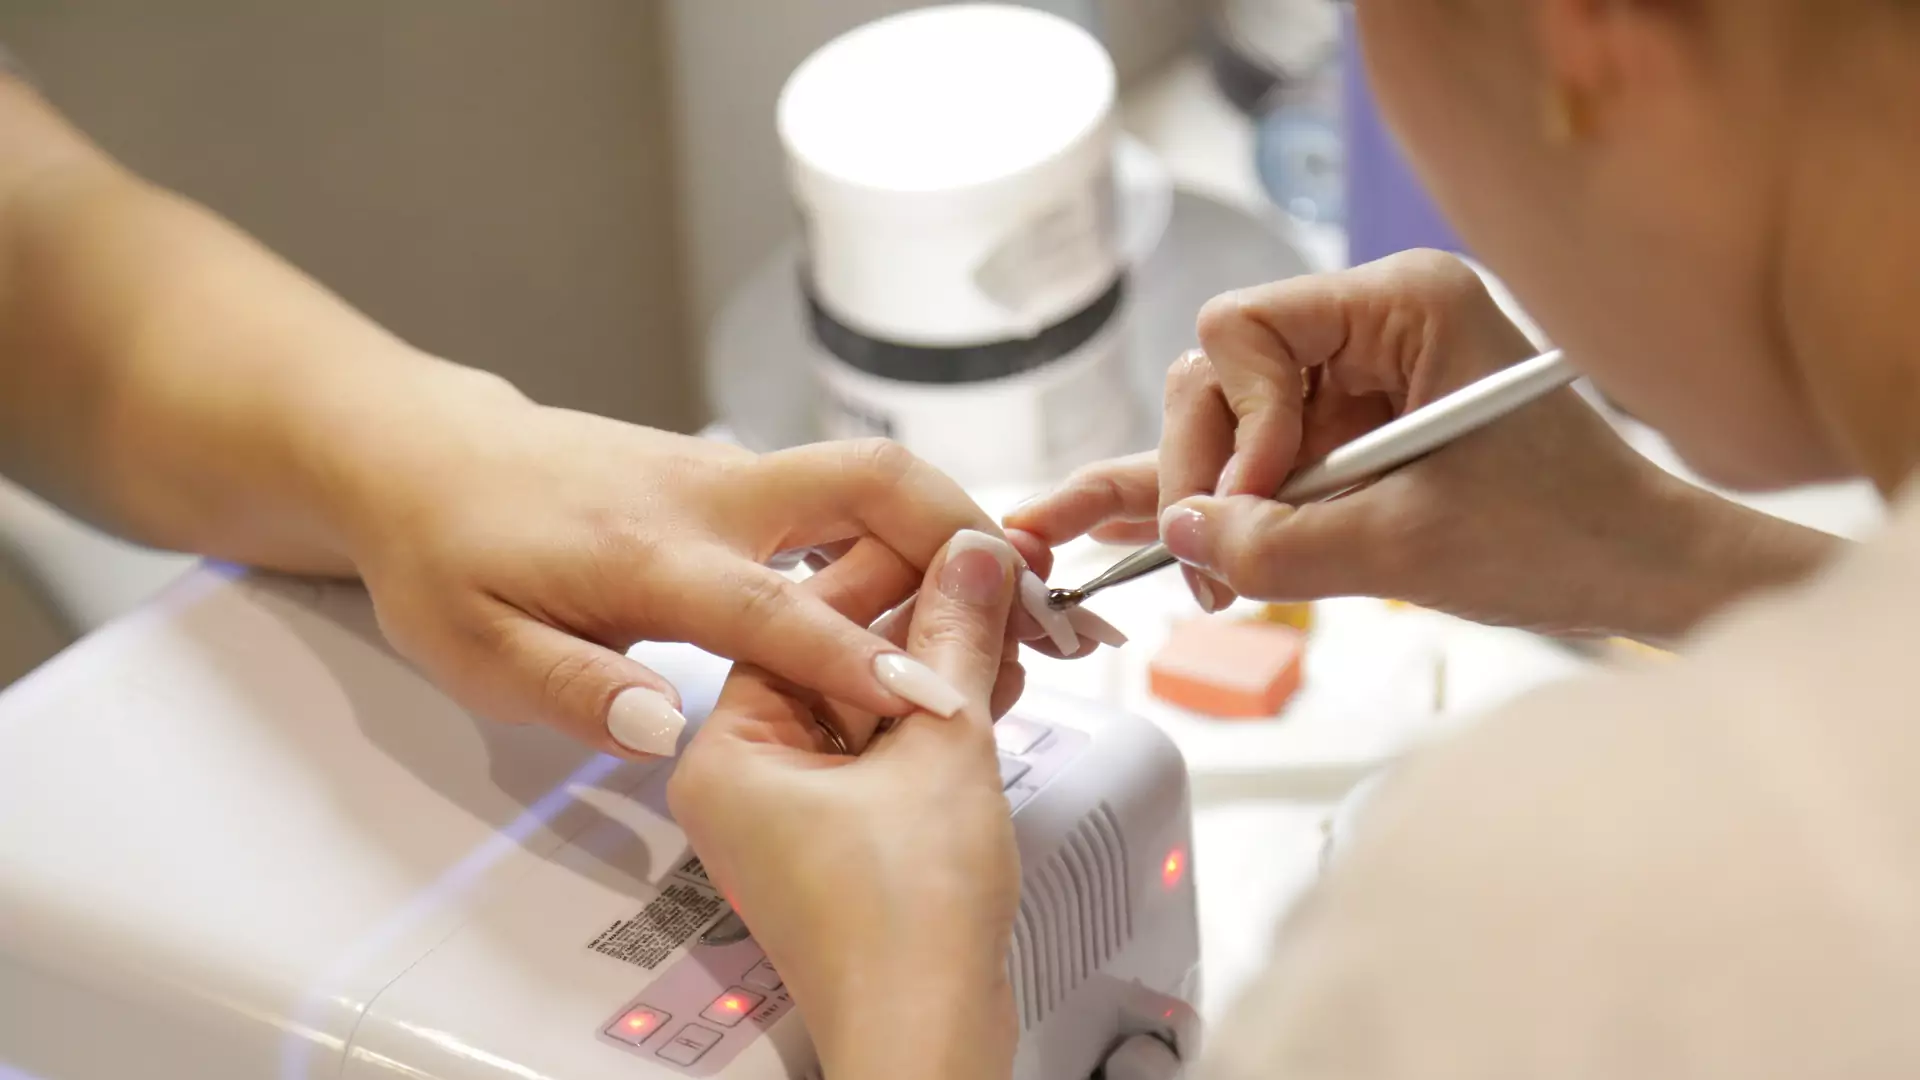 Czy manicure hybrydowy zwiększa ryzyko nowotworu? Polscy onkolodzy skomentowali wyniki badań